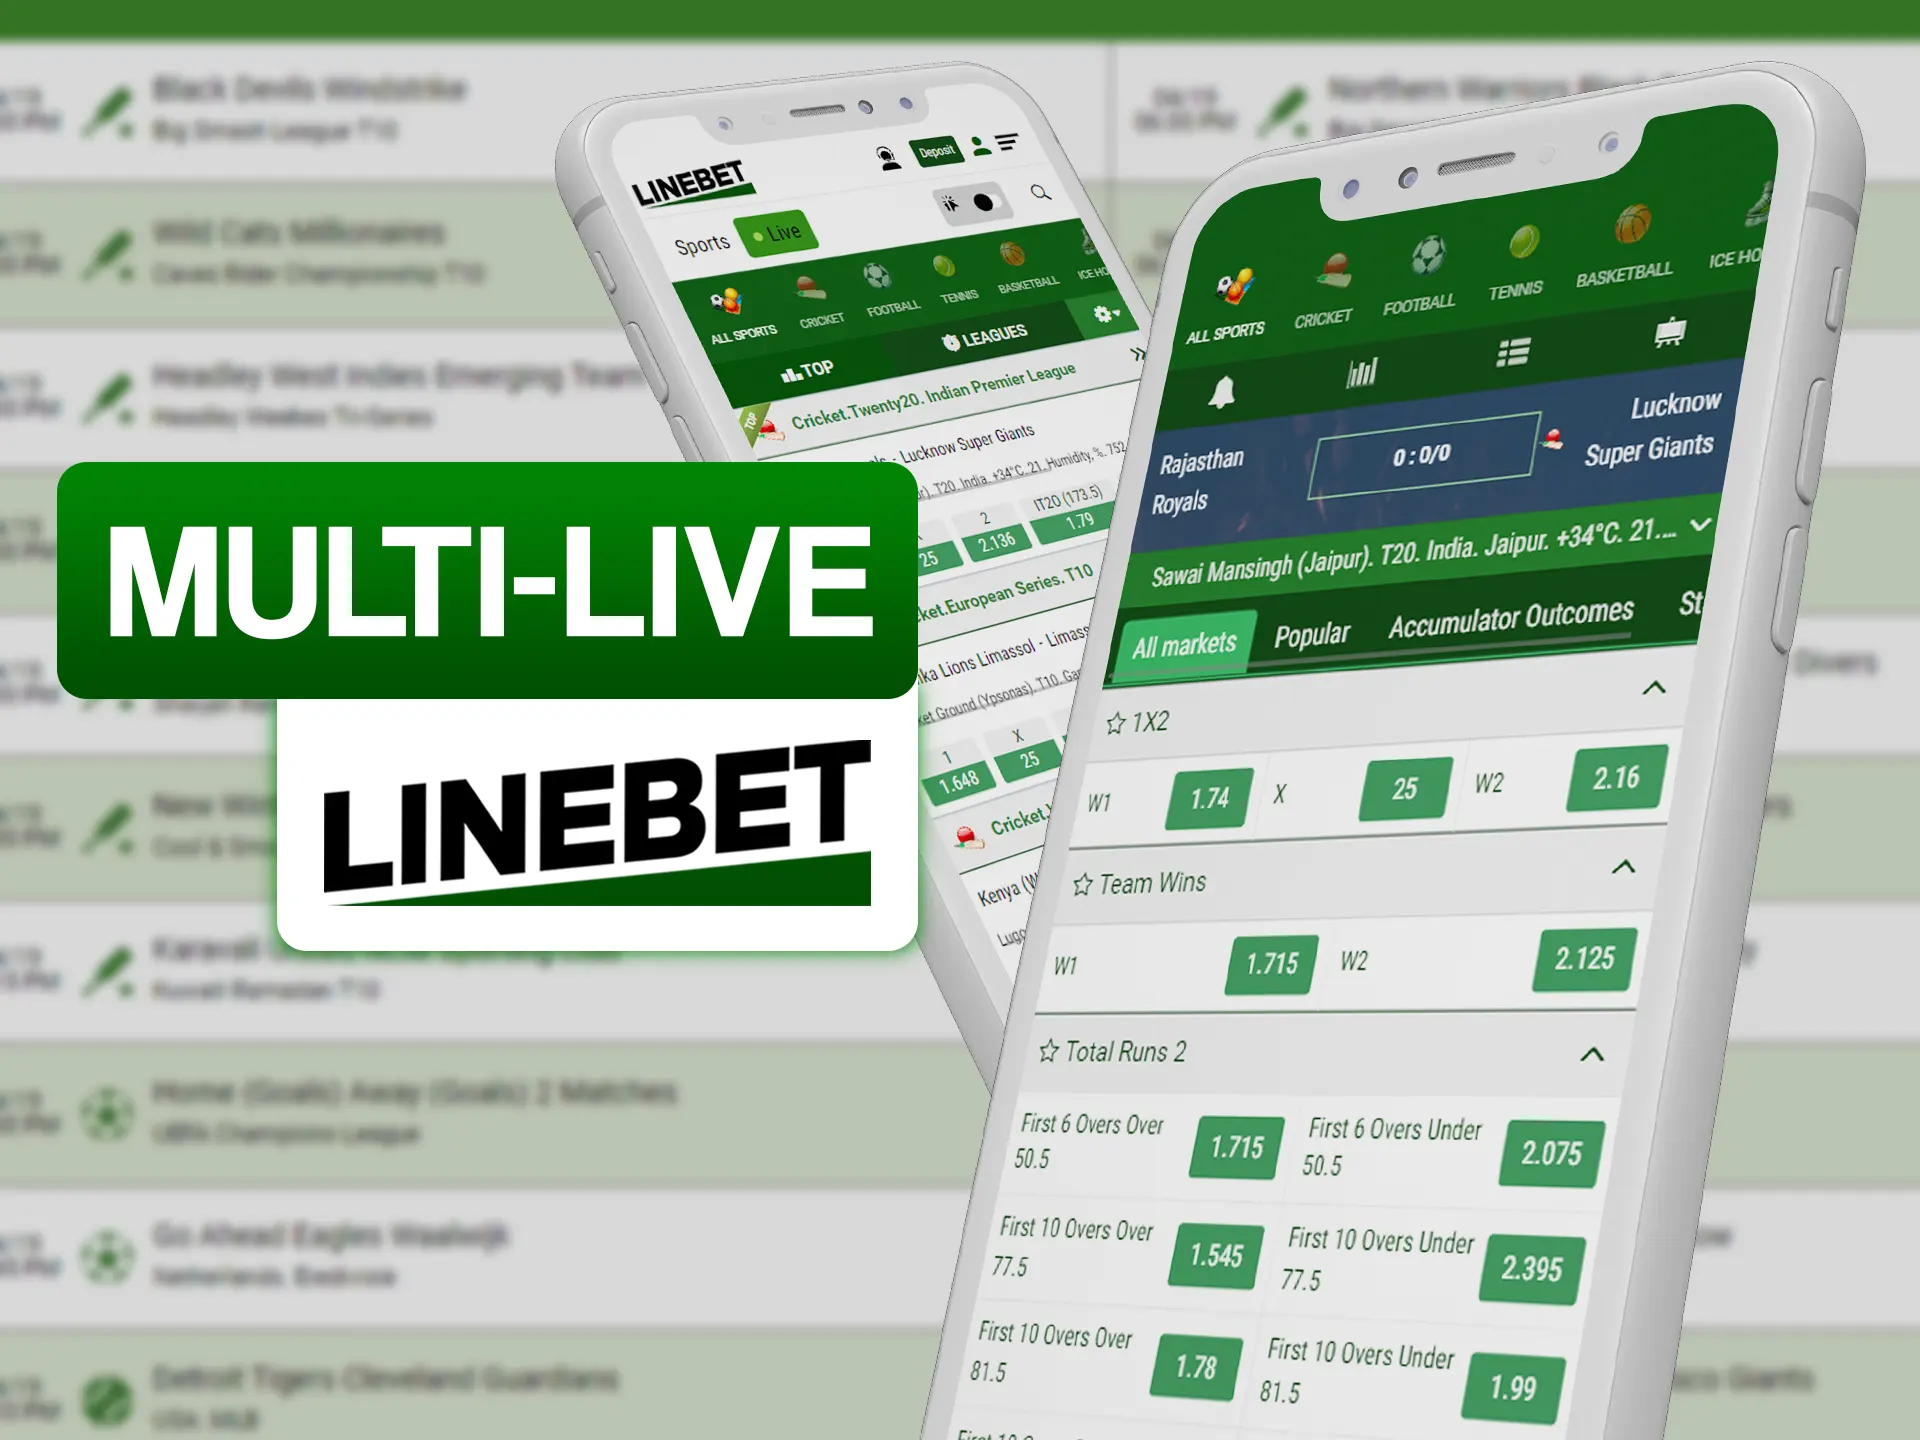 Make bets on parralel live games at Linebet.